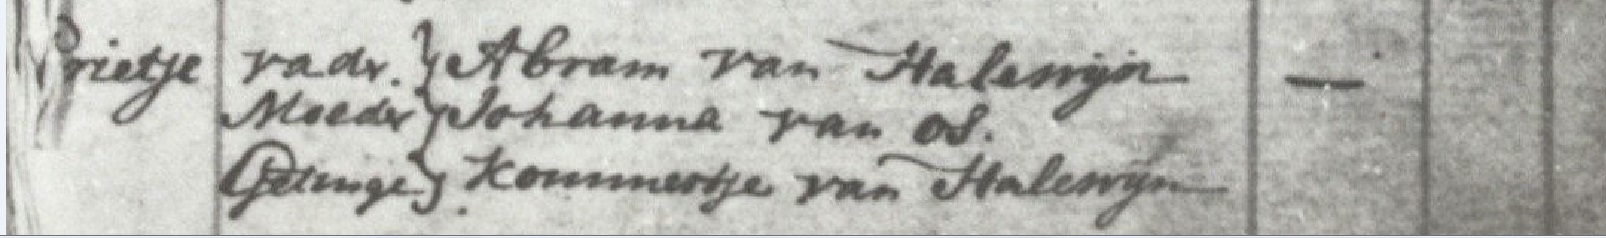 doopbericht Grietje v Halewijn 1757